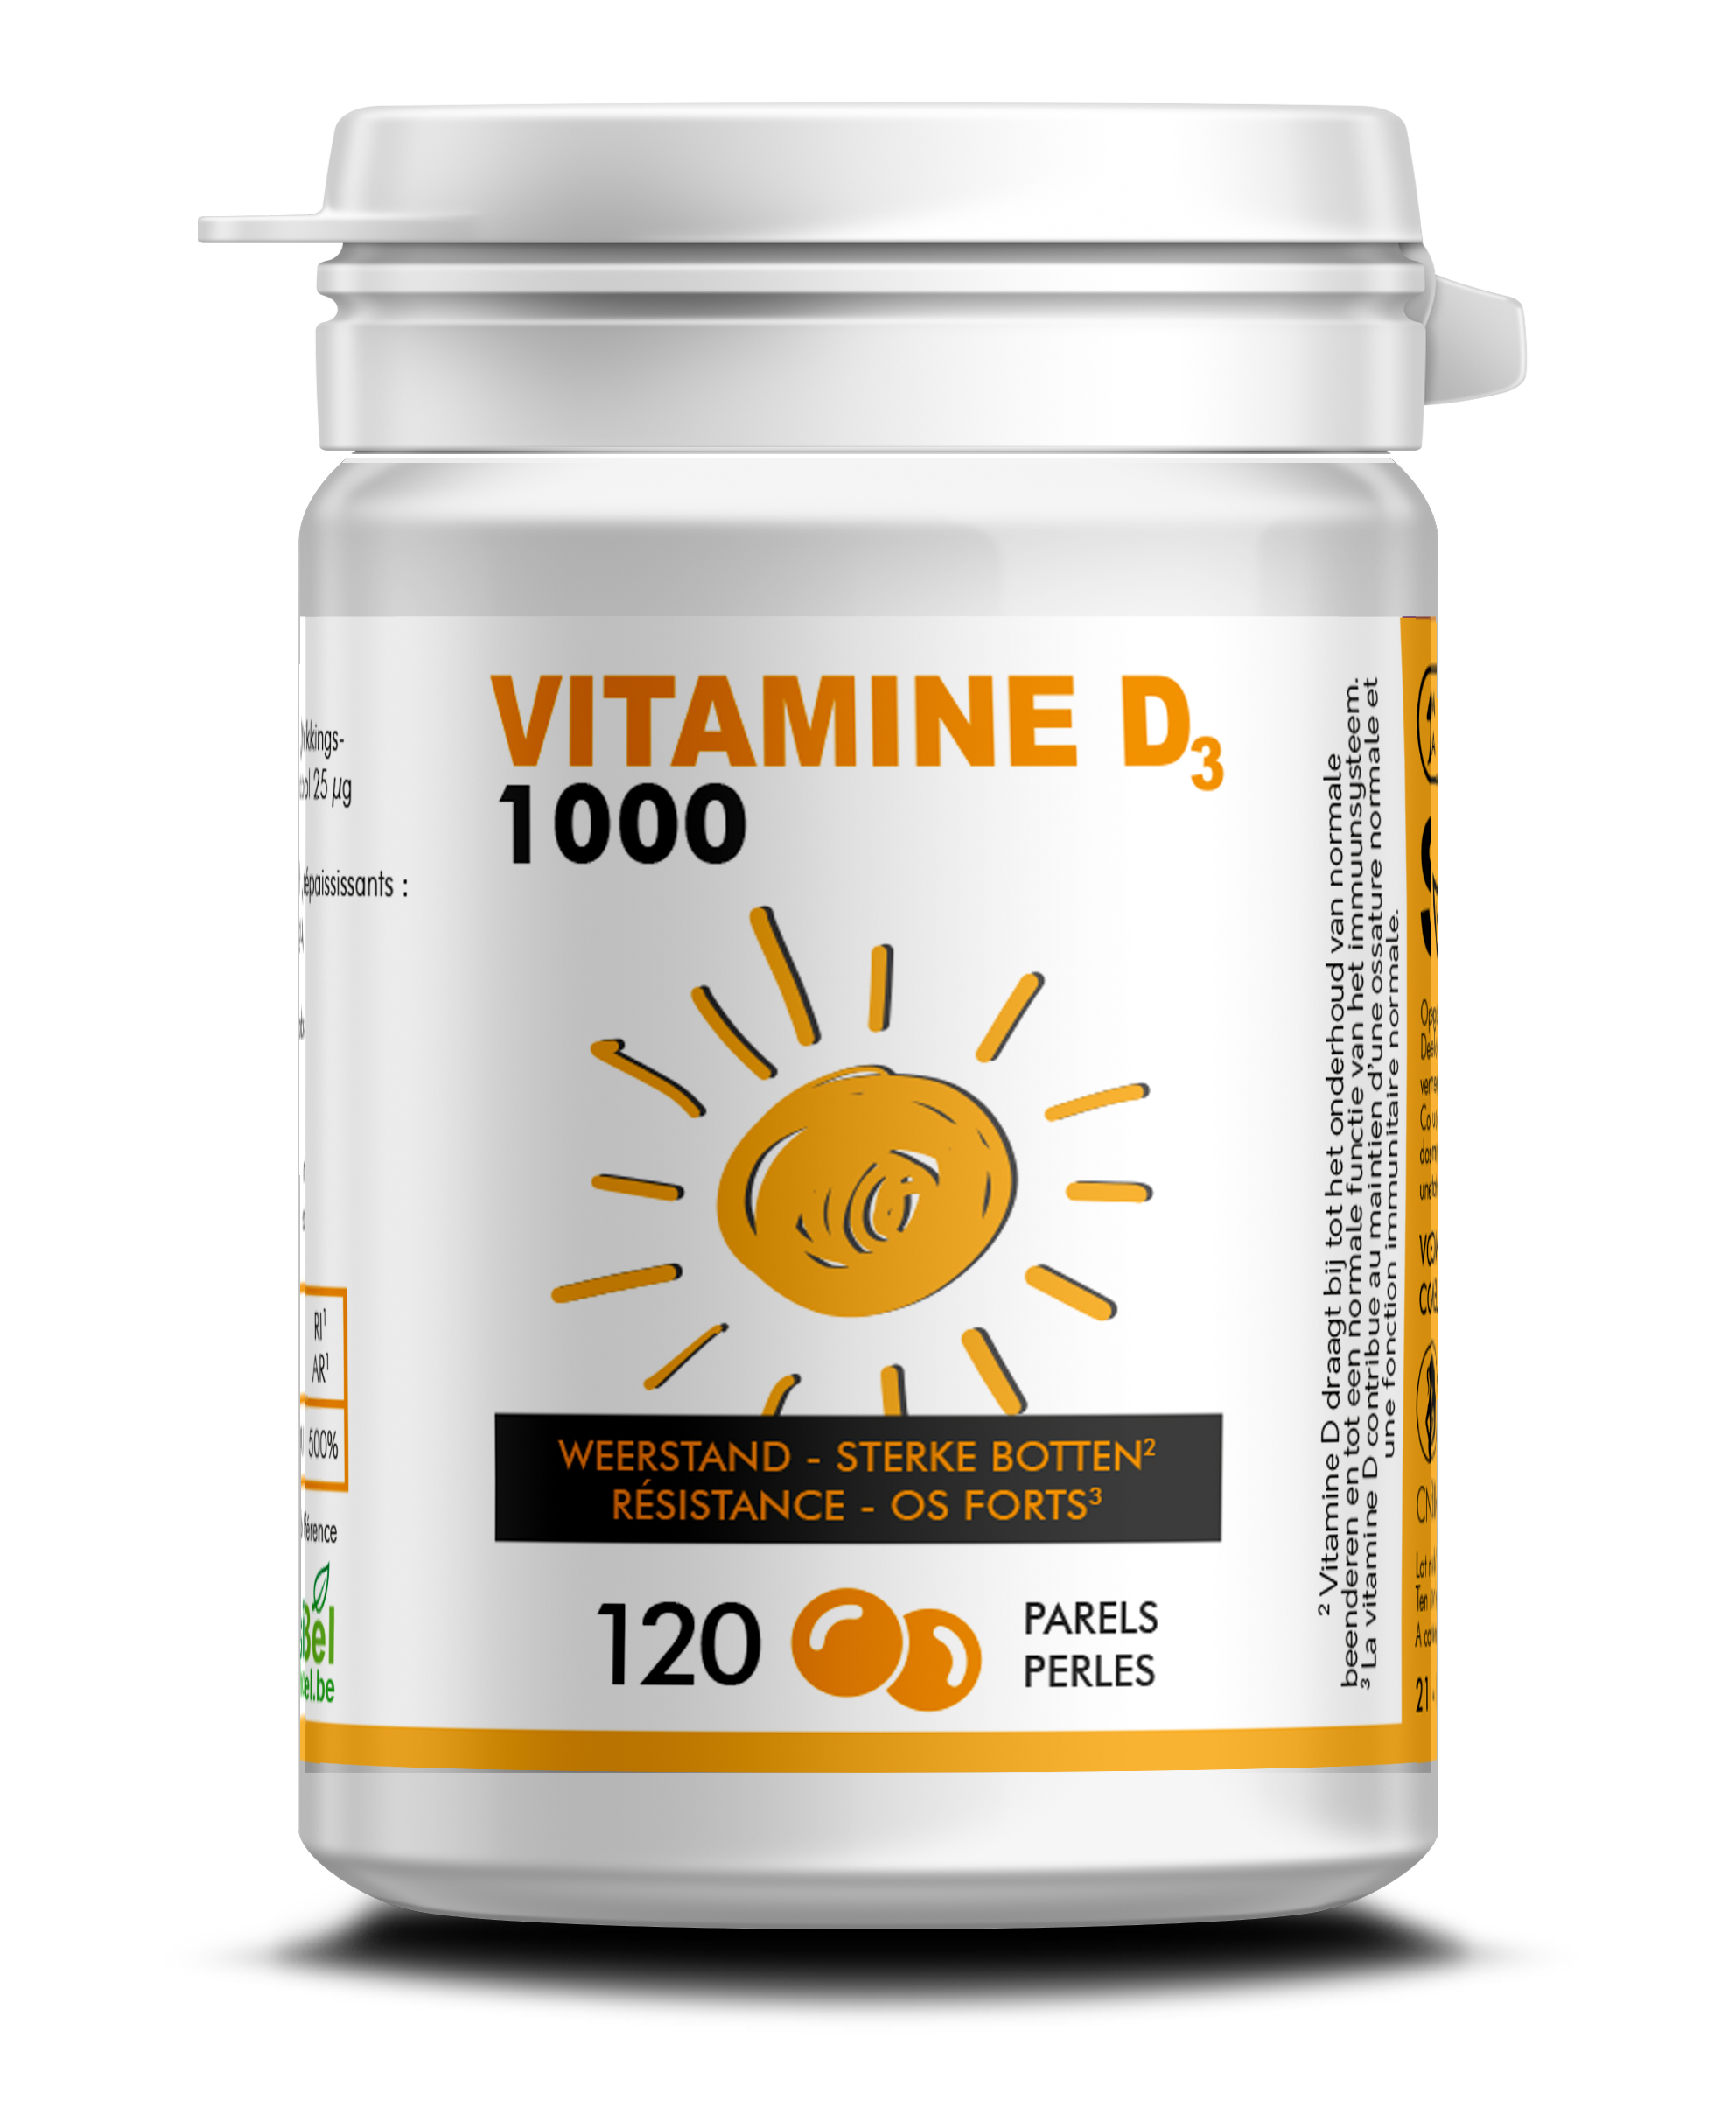 Vitamine D 1000 U.I